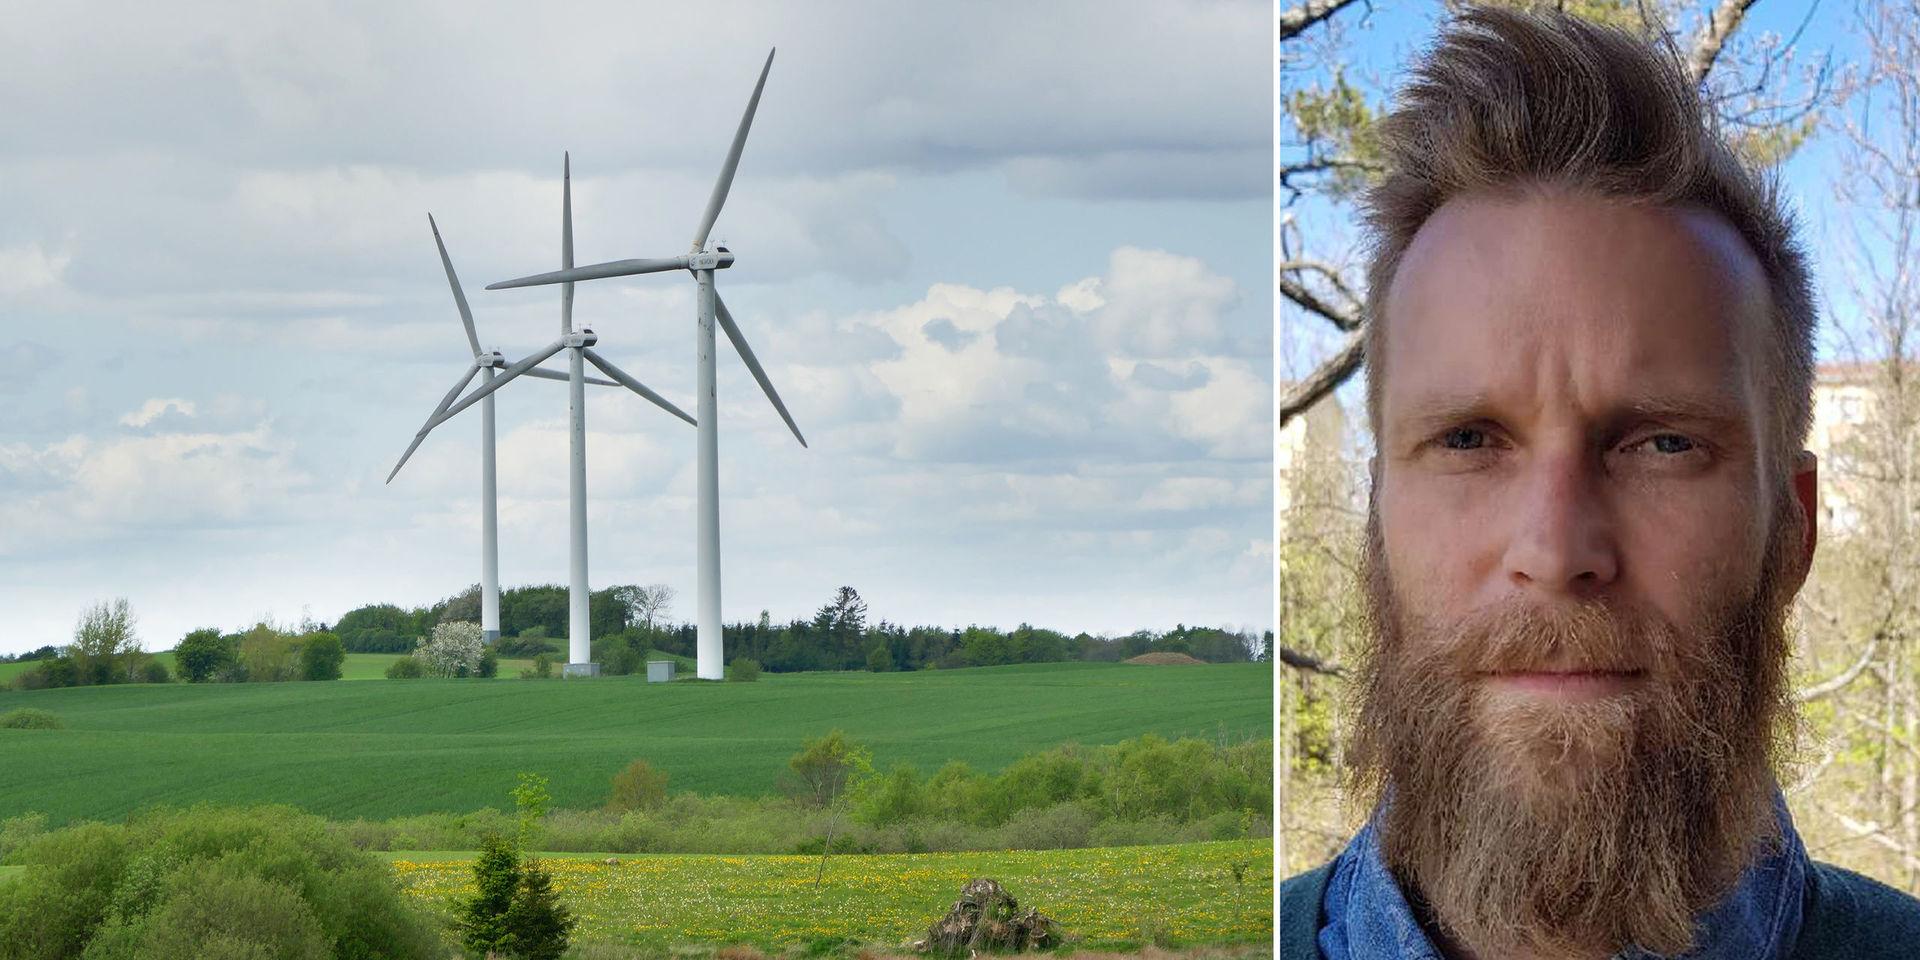 Projektet kommer ge en årsproduktion motsvarande cirka 1 procent av Sveriges elproduktion. Vänsterpartiet har sedan tidigare röstat för det miljöstrategiska programmet och översiktsplanen som pekar ut detta område för havsbaserad vindkraft. Vilket gör det ännu mer märkligt att nu säga nej, skriver debattören.